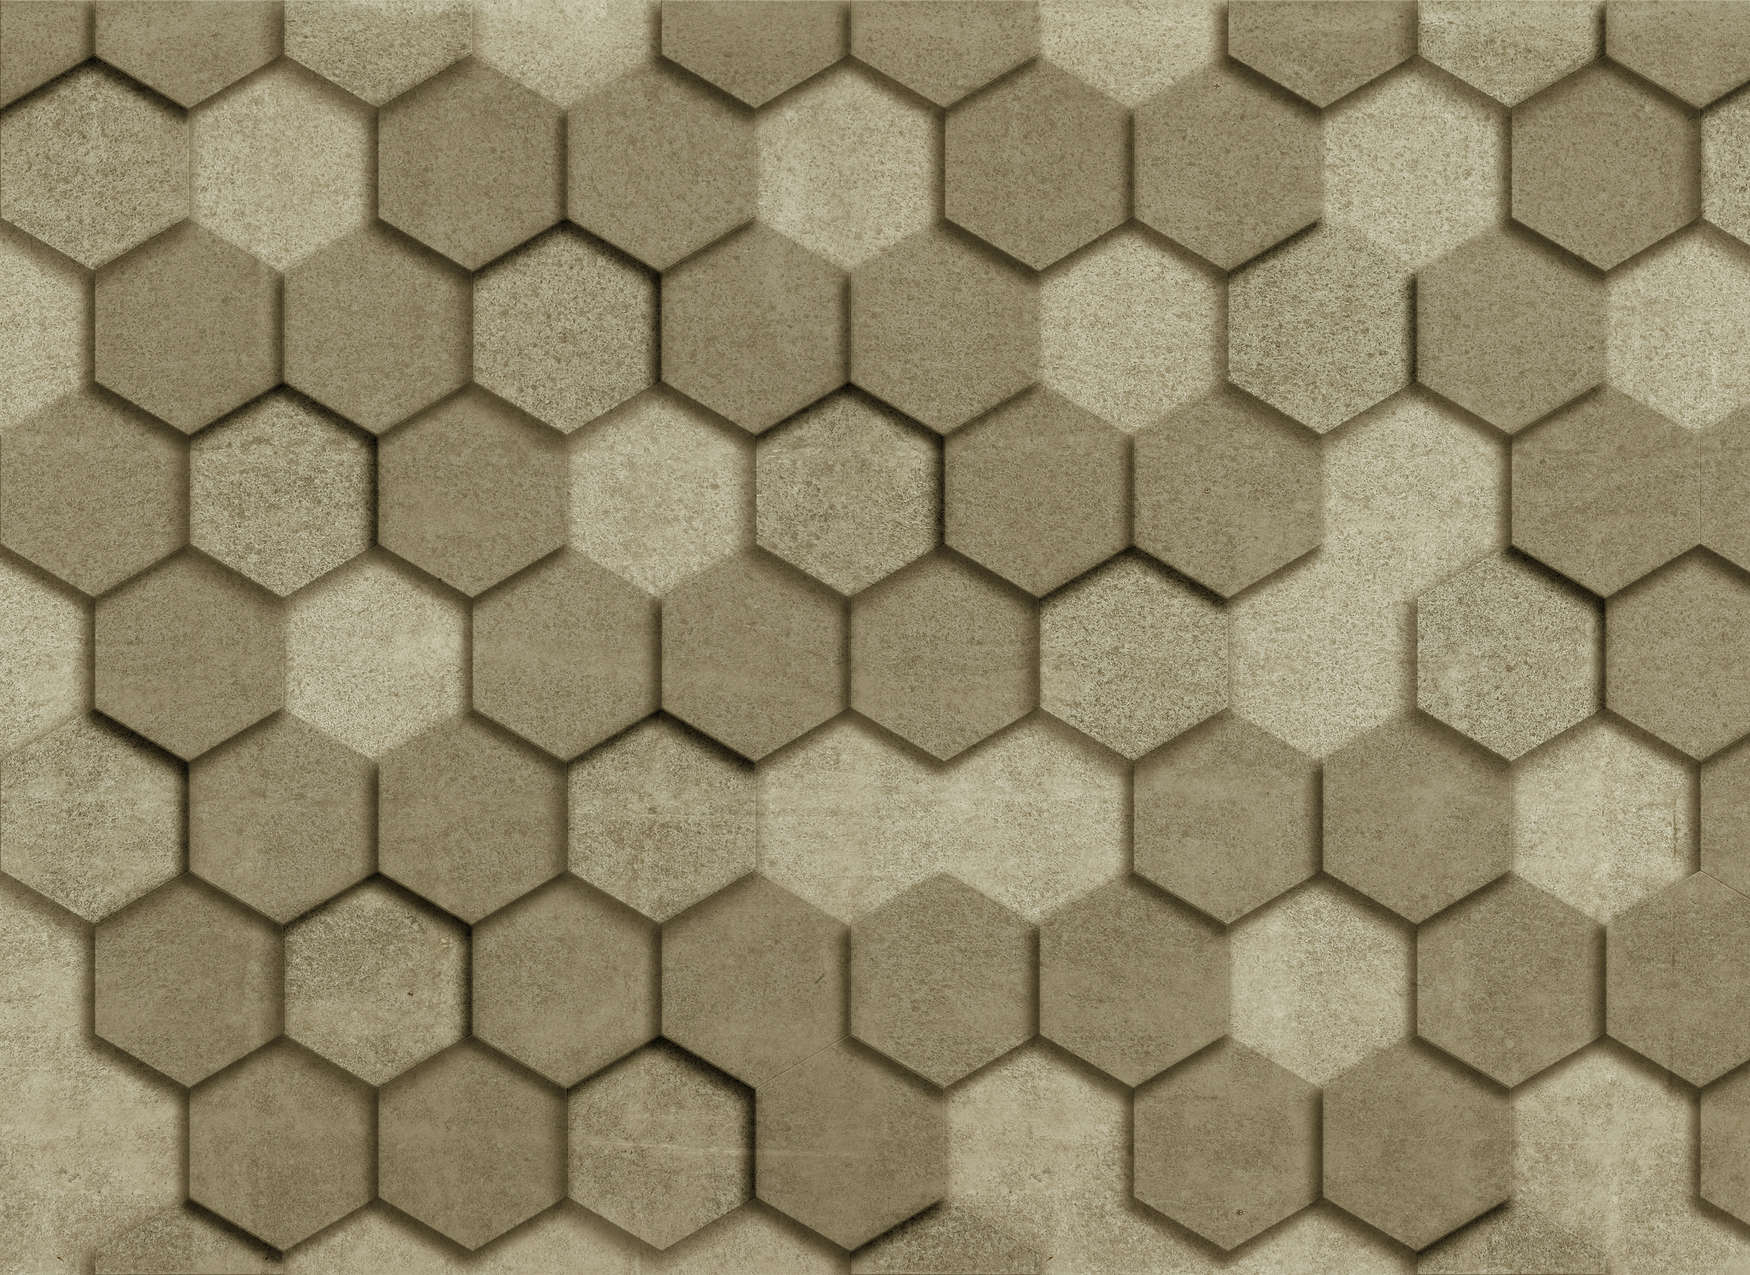             Digital behang met geometrische tegels hexagonale 3D look - goud
        